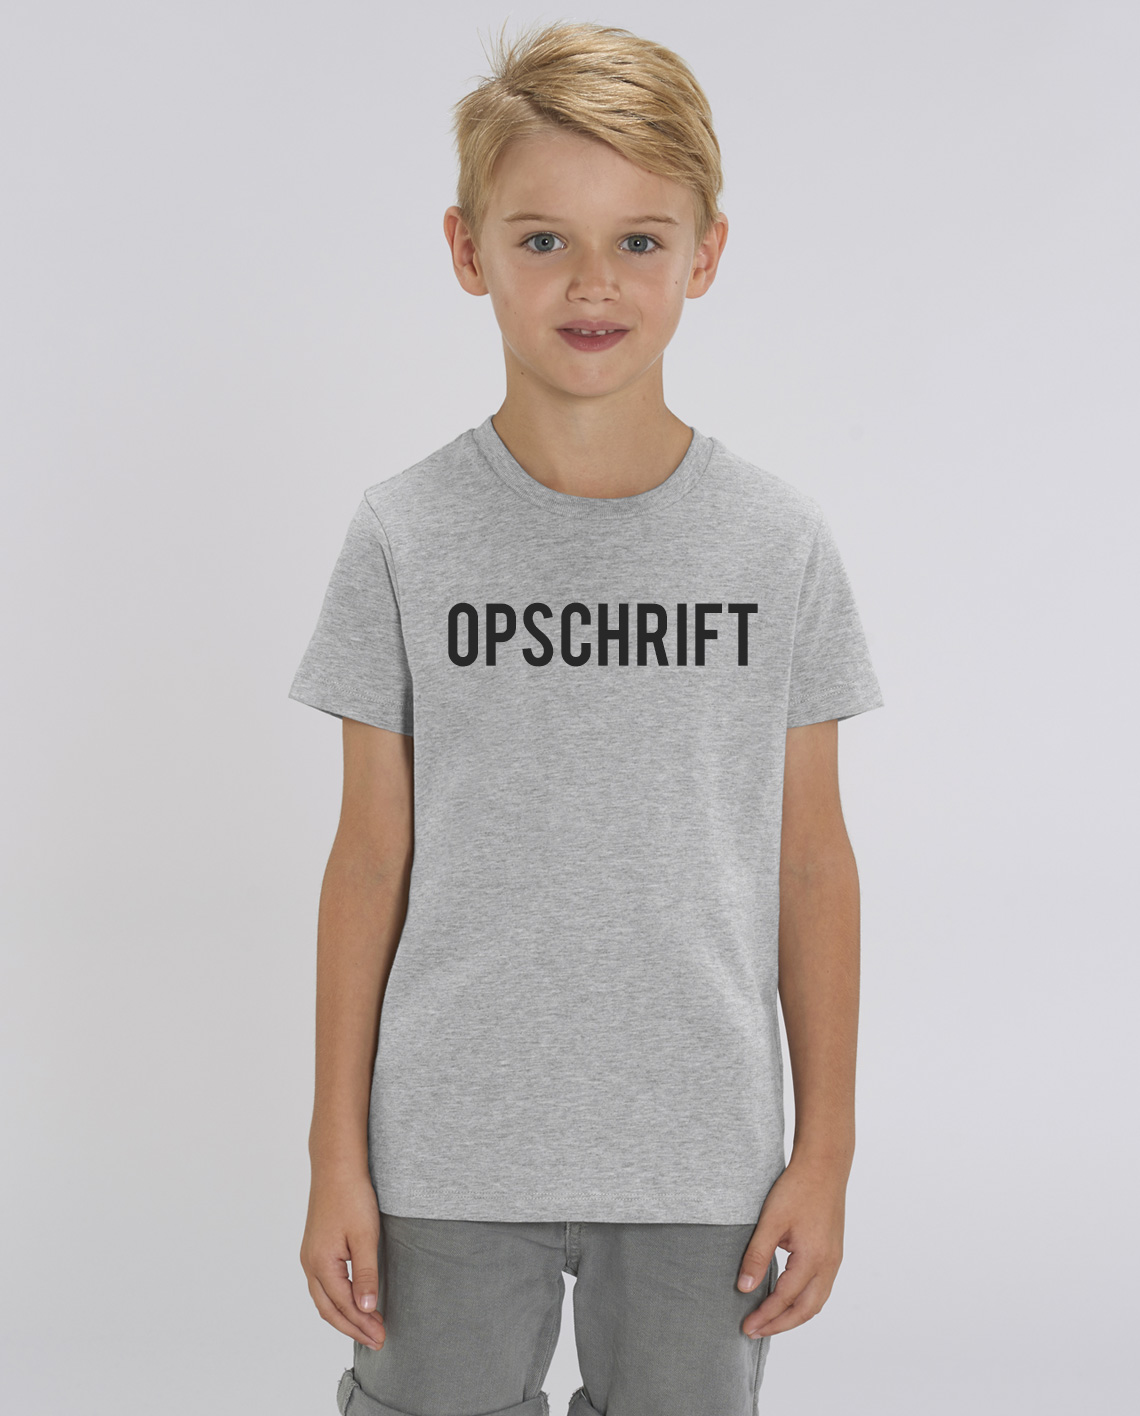 T-shirt Kinderen online bestellen Intdialect.com - >>